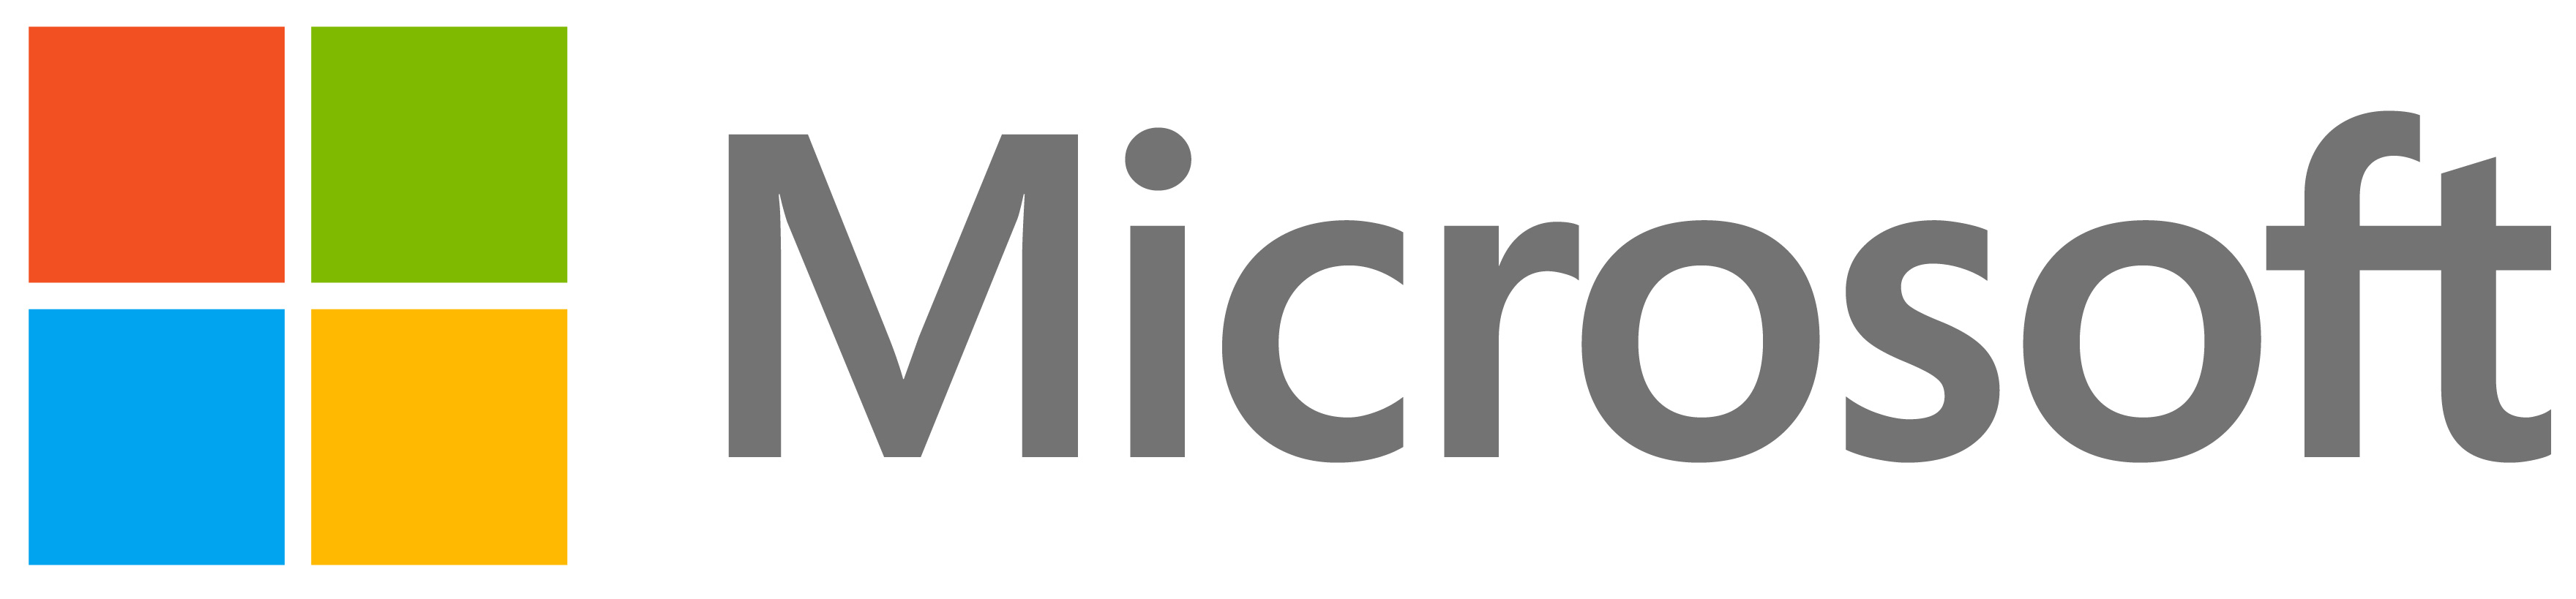 microsoft微软商城